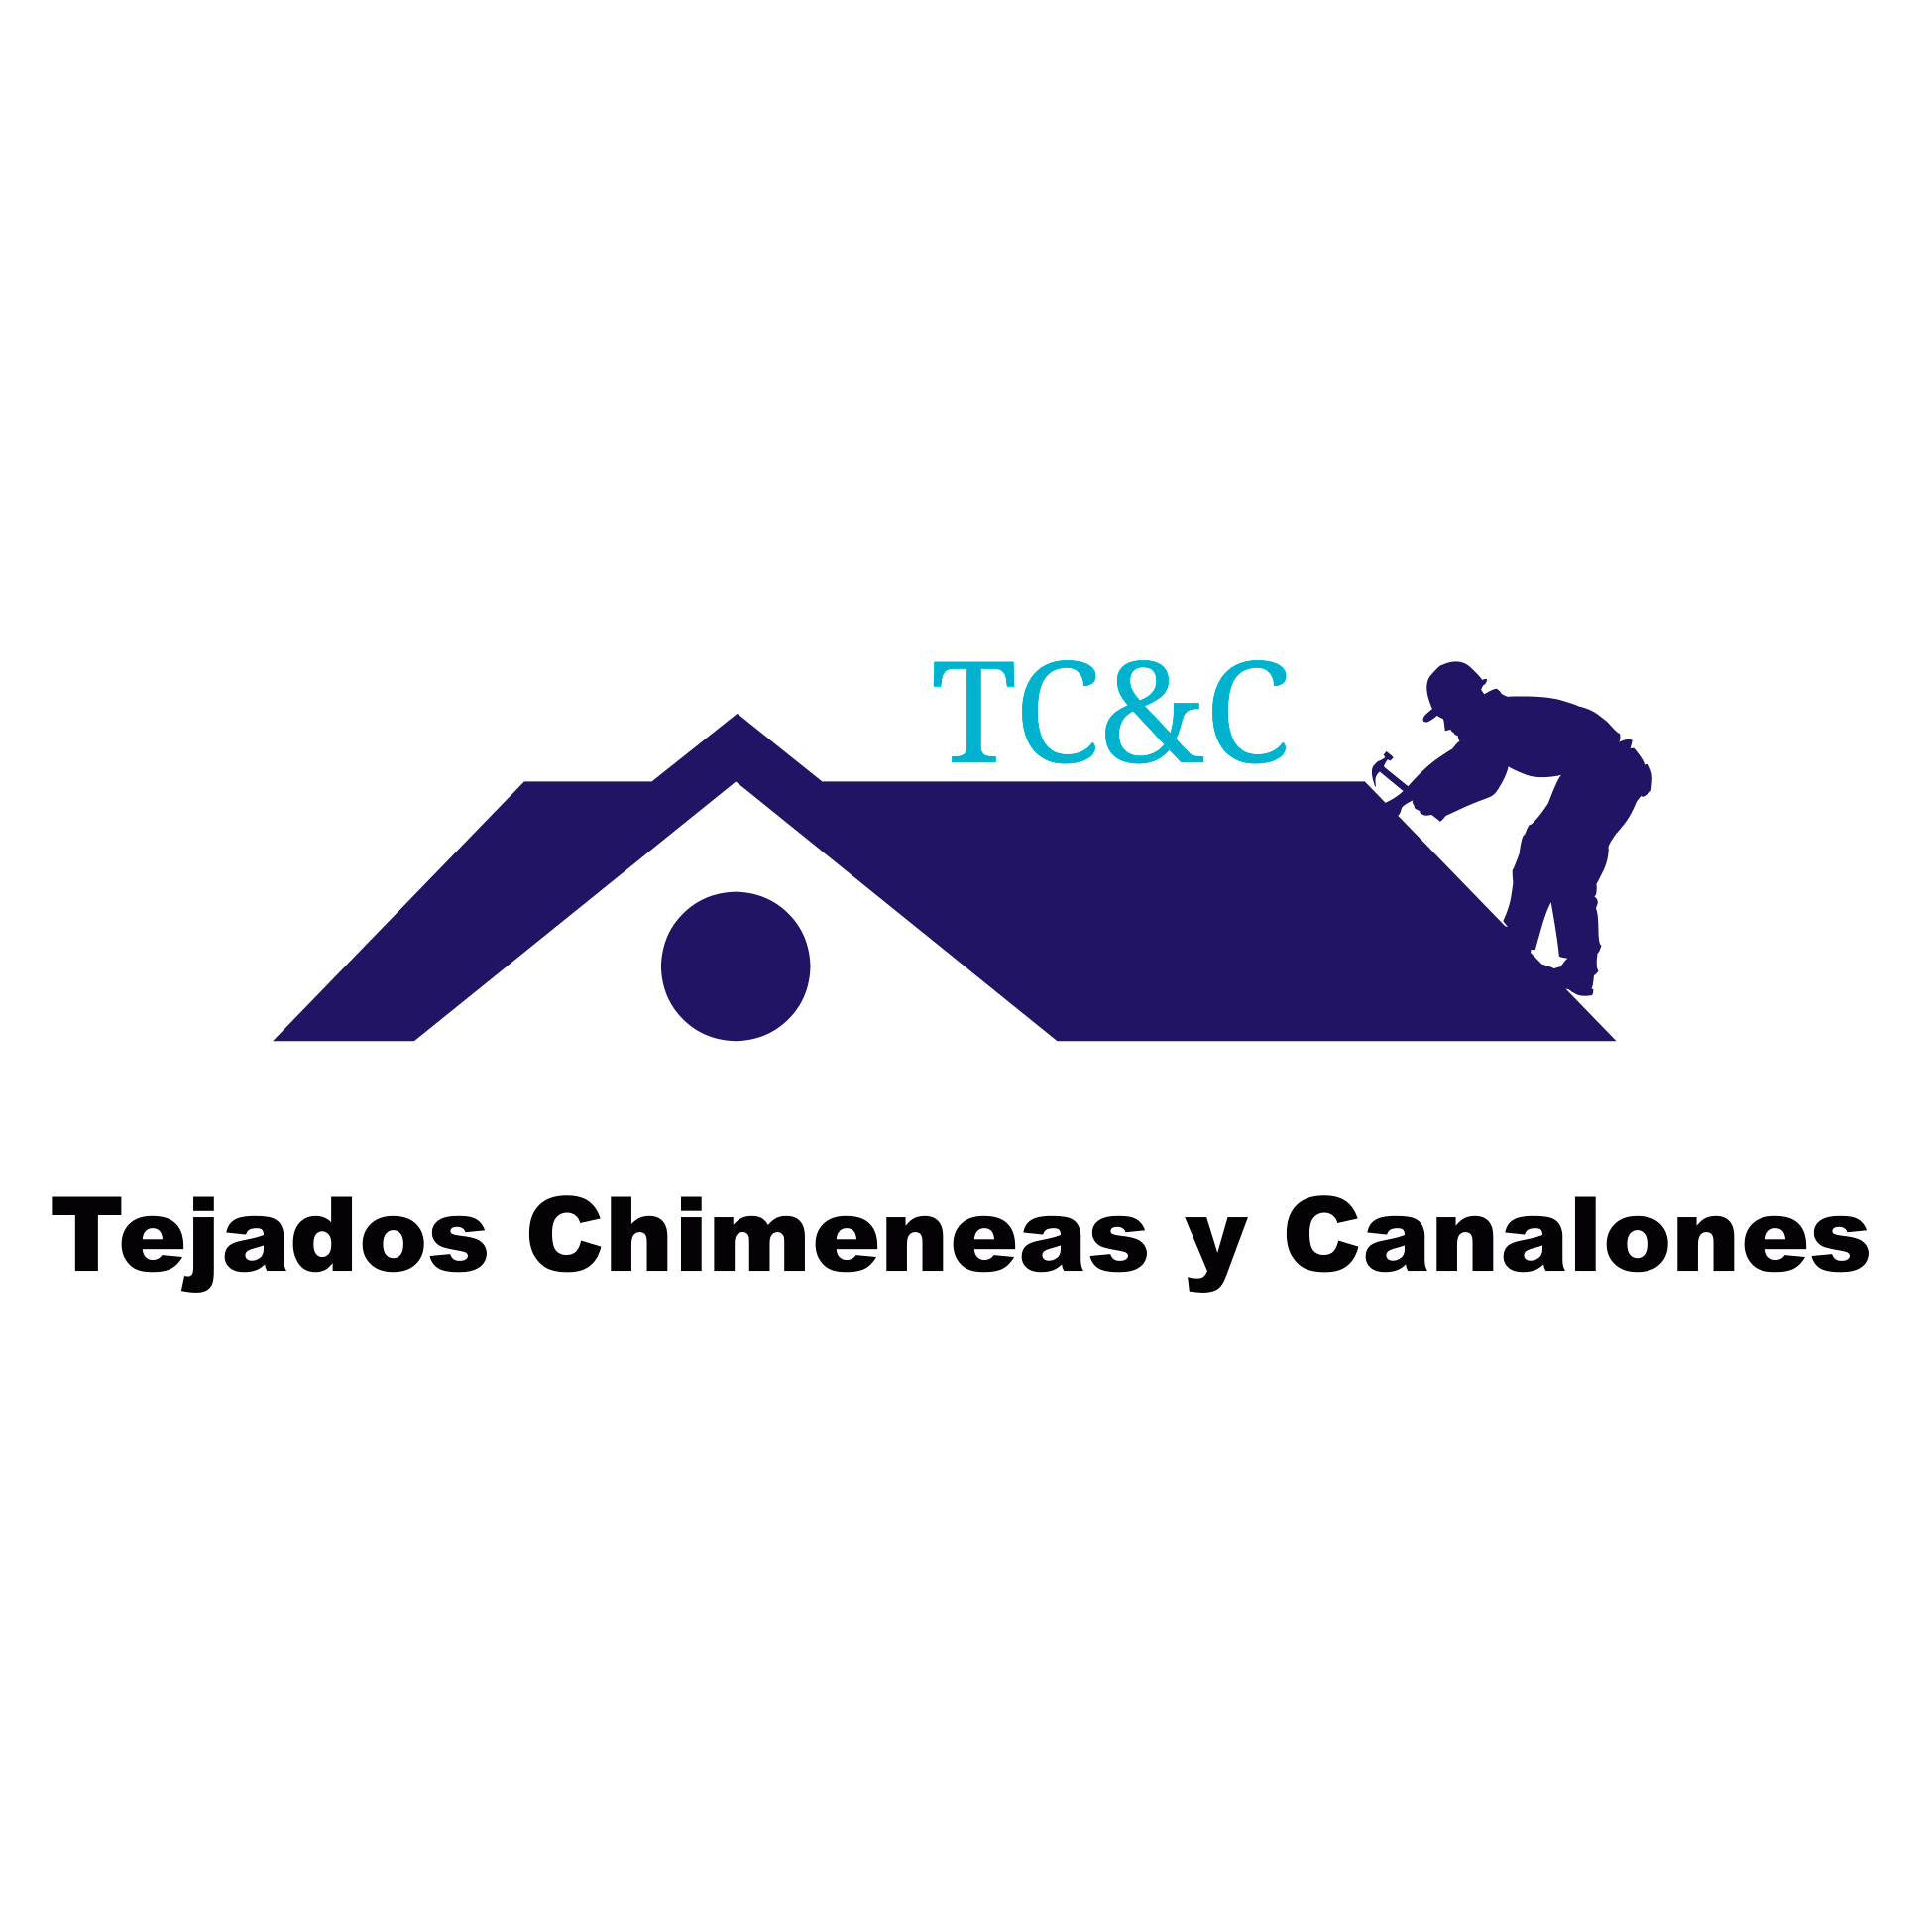 TEJADOS TC&C 1972, SL Logo